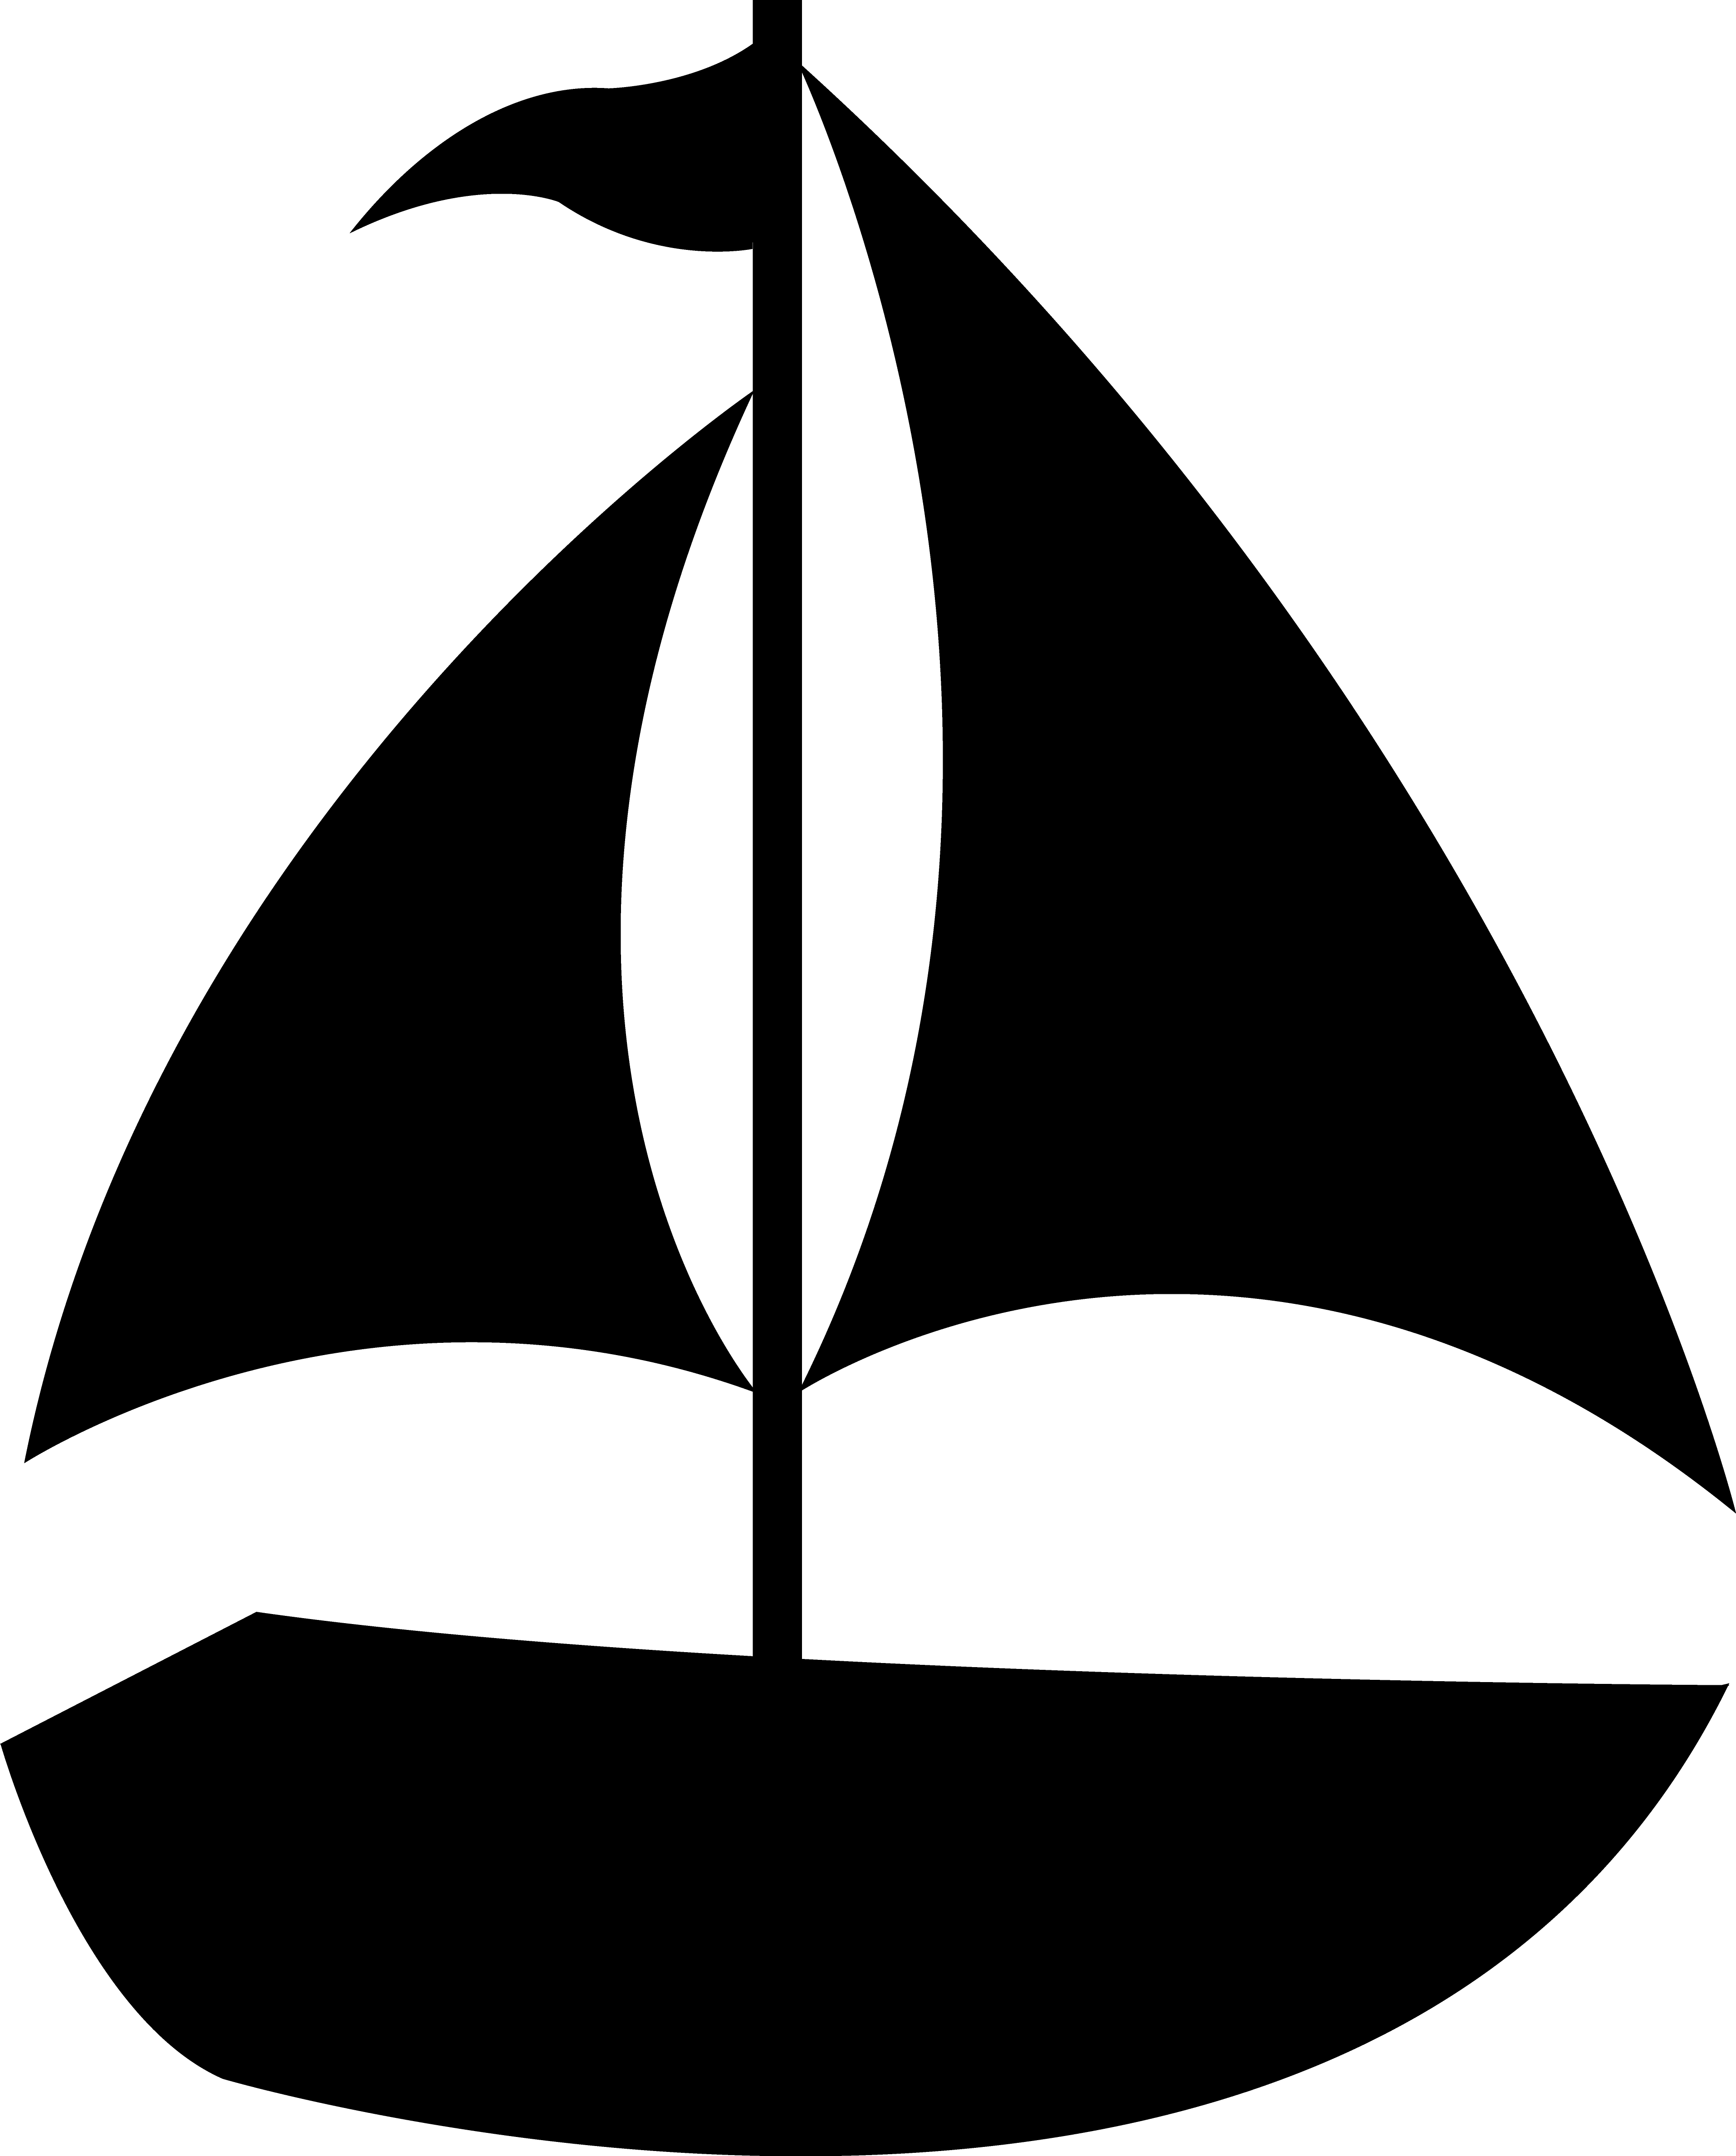 Clipart Horse Head Silhouette - Sailboat Silhouette Clip Art (3827x4754)